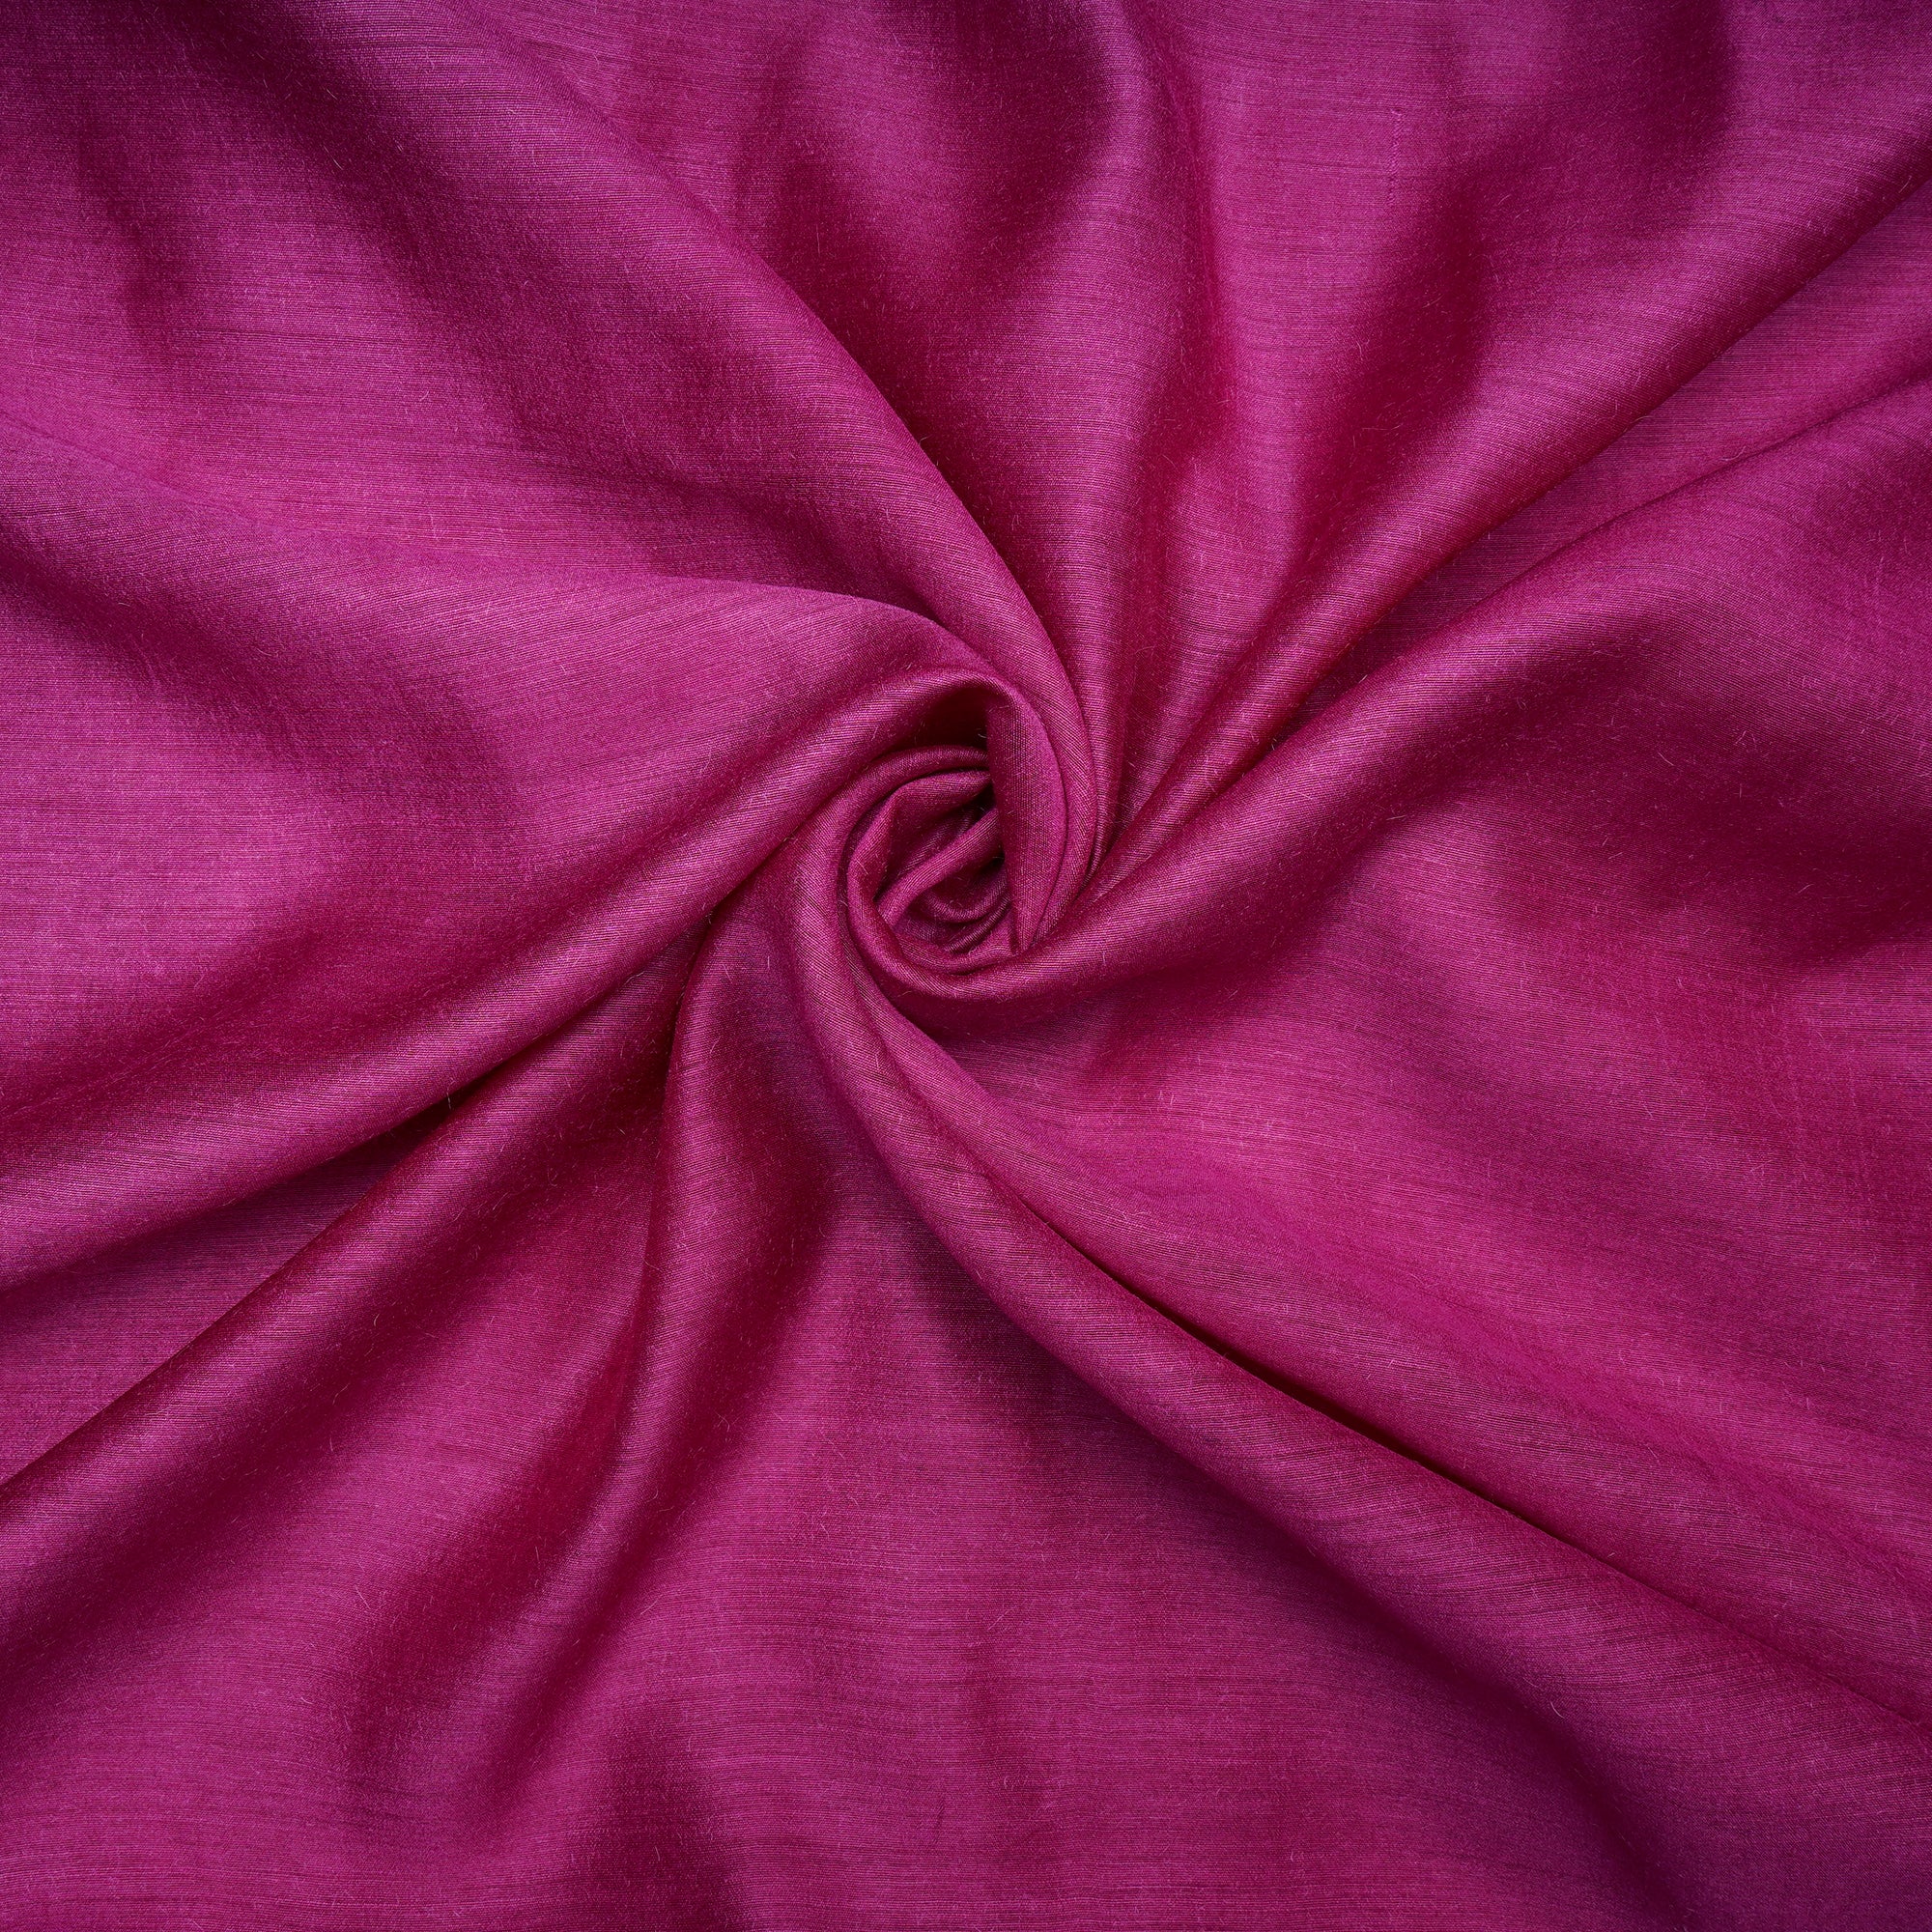 Rani Pink Piece Dyed Pure Muga Silk Fabric